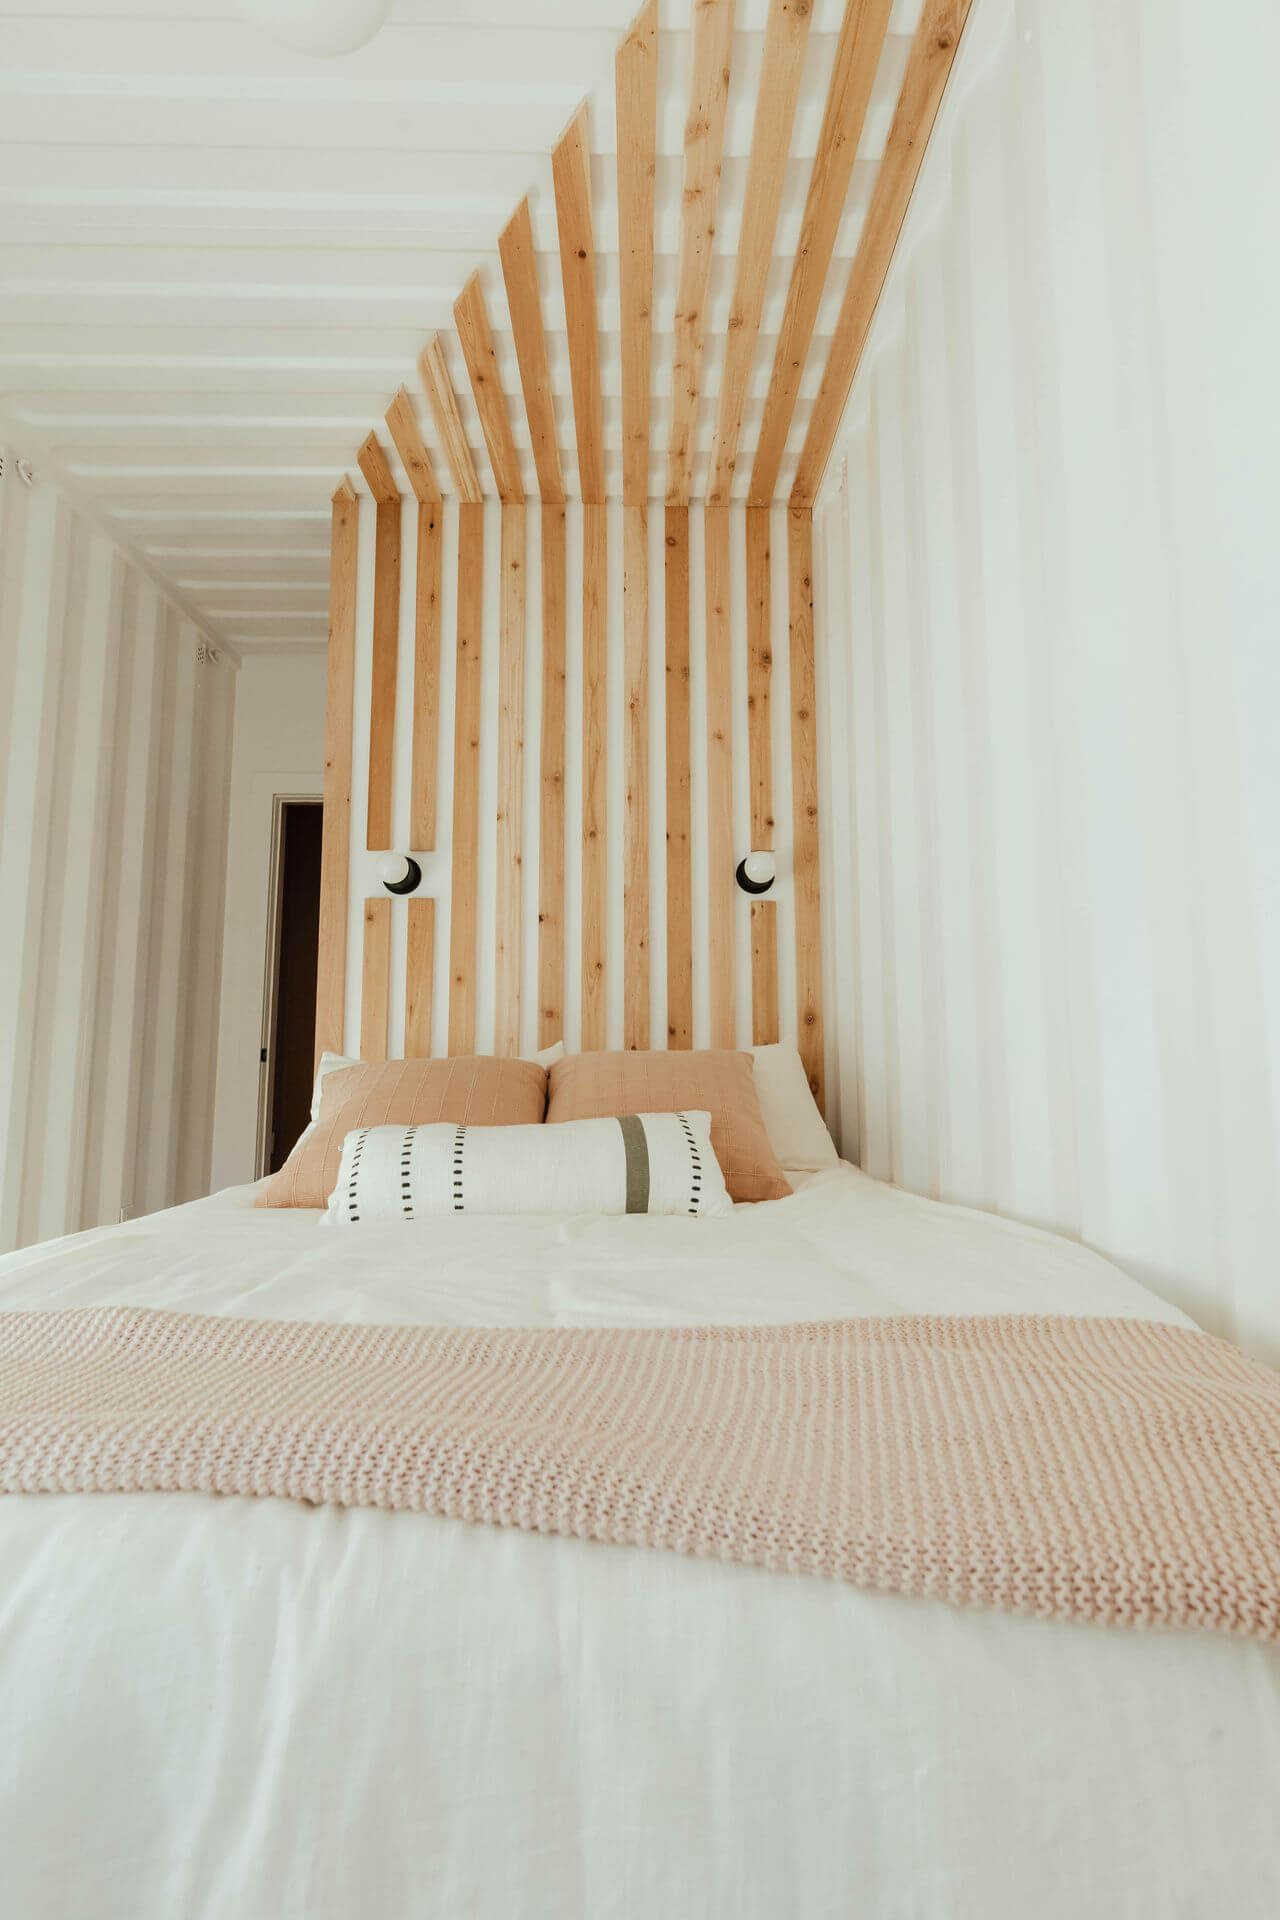 деревянные рейки в изголовье кровати